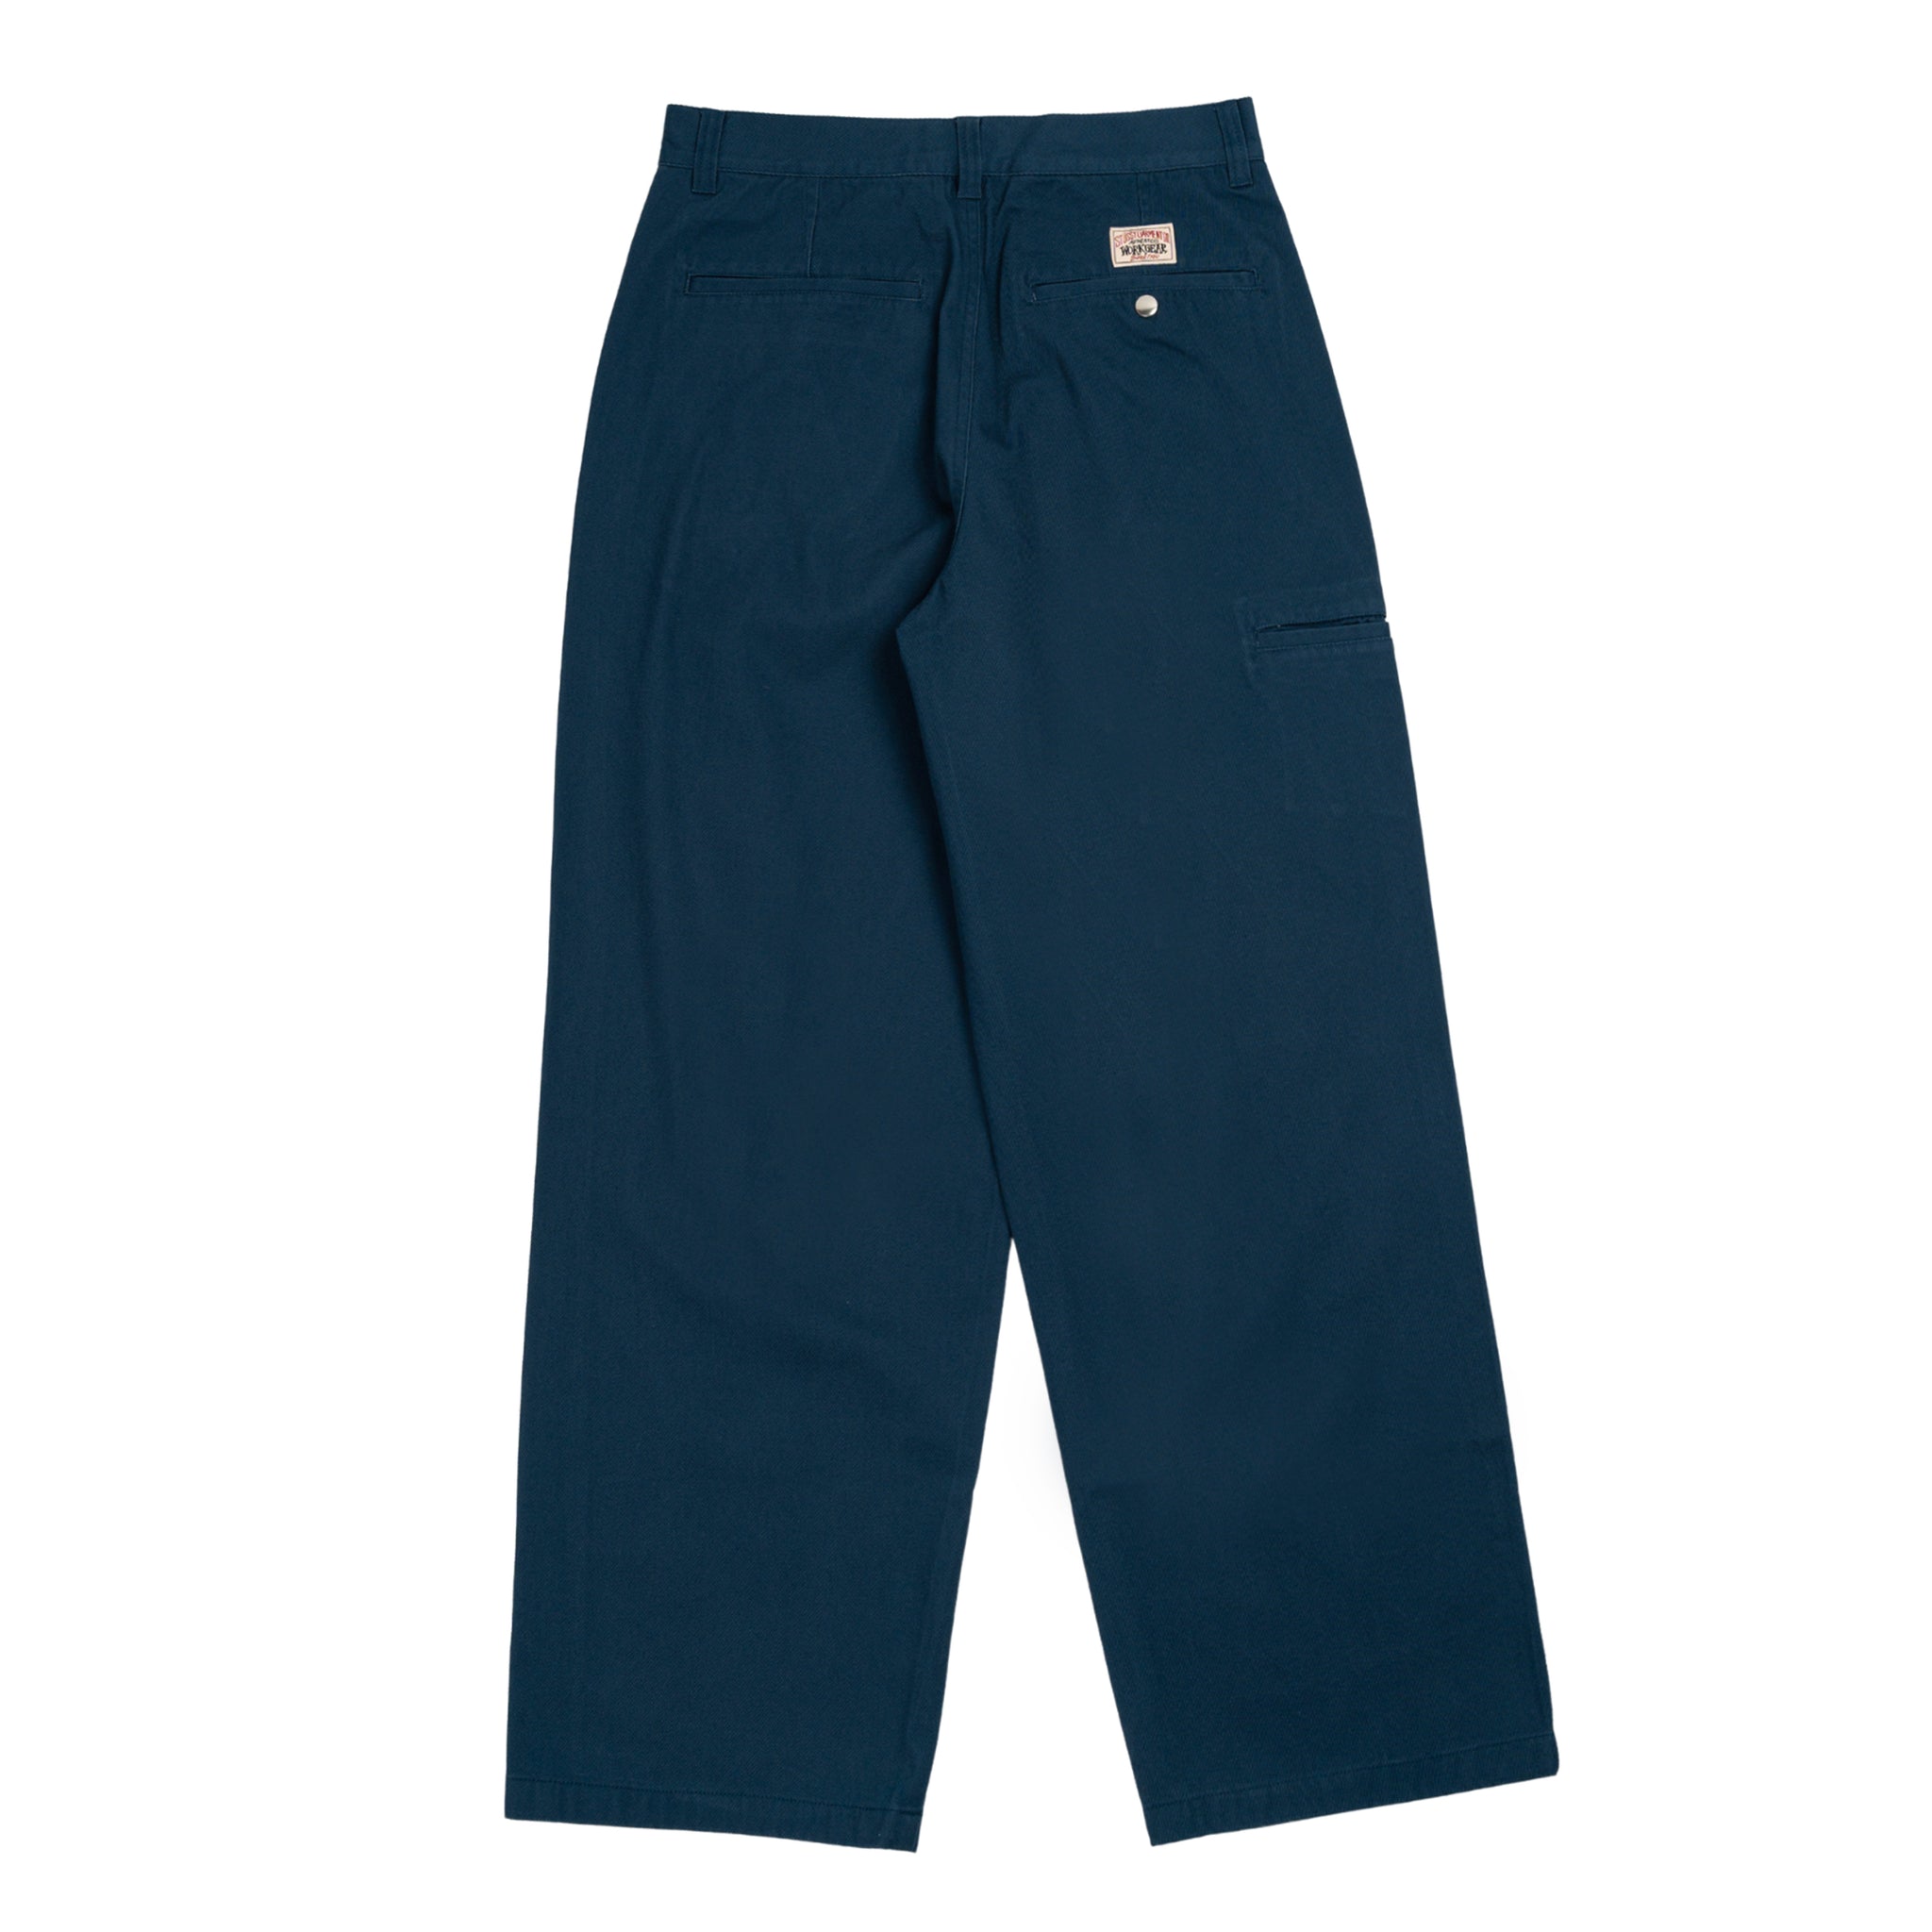 Twill Workgear pantalone in cotone in blu navy